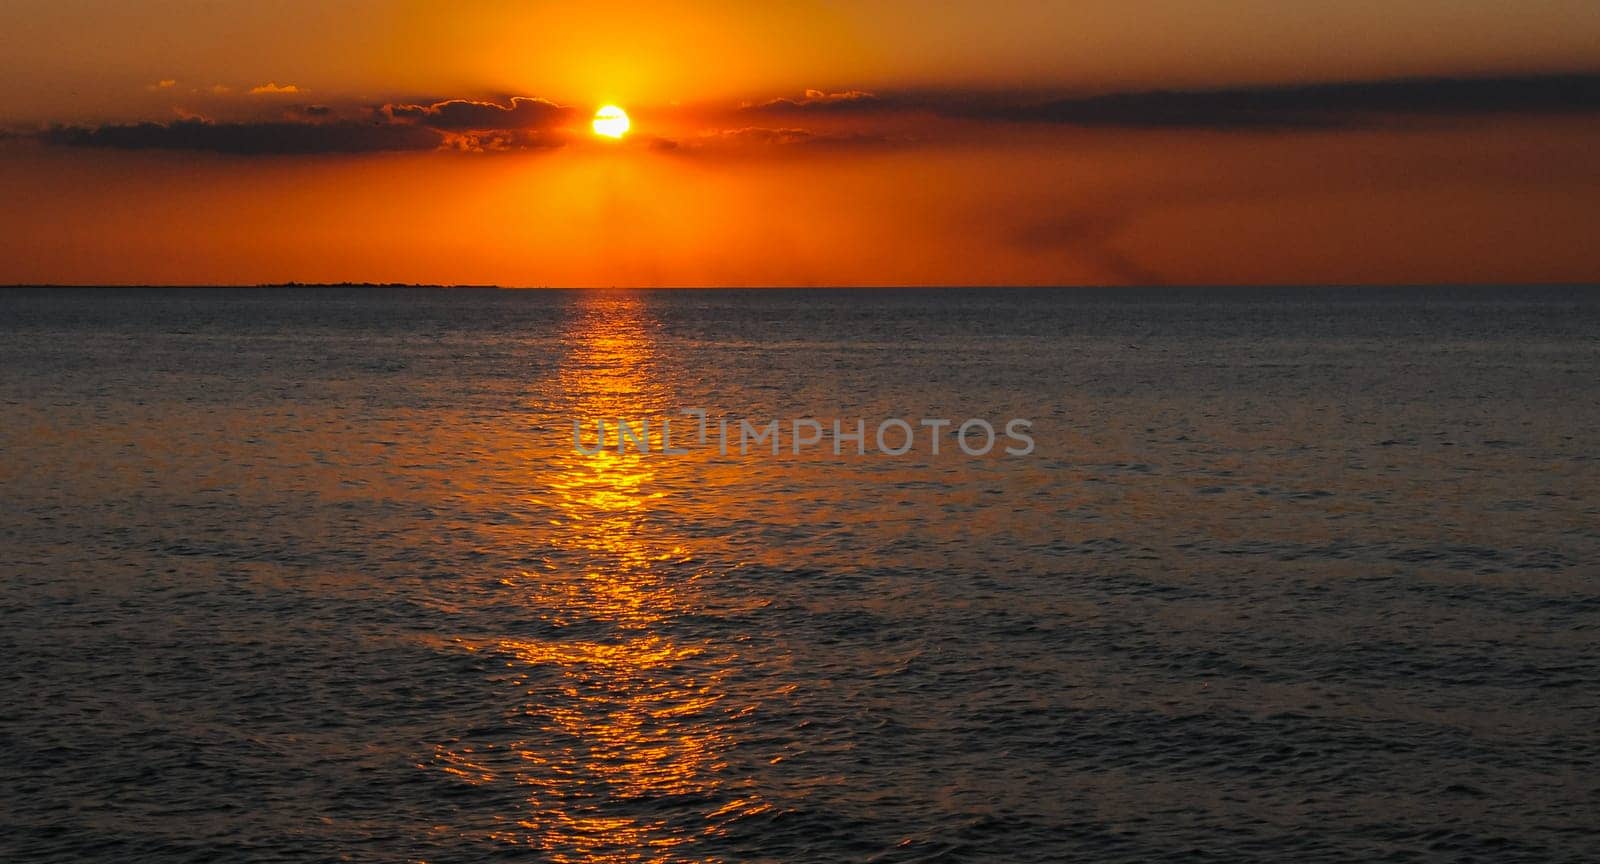 Sunrise over the Black Sea in the Eastern Crimea